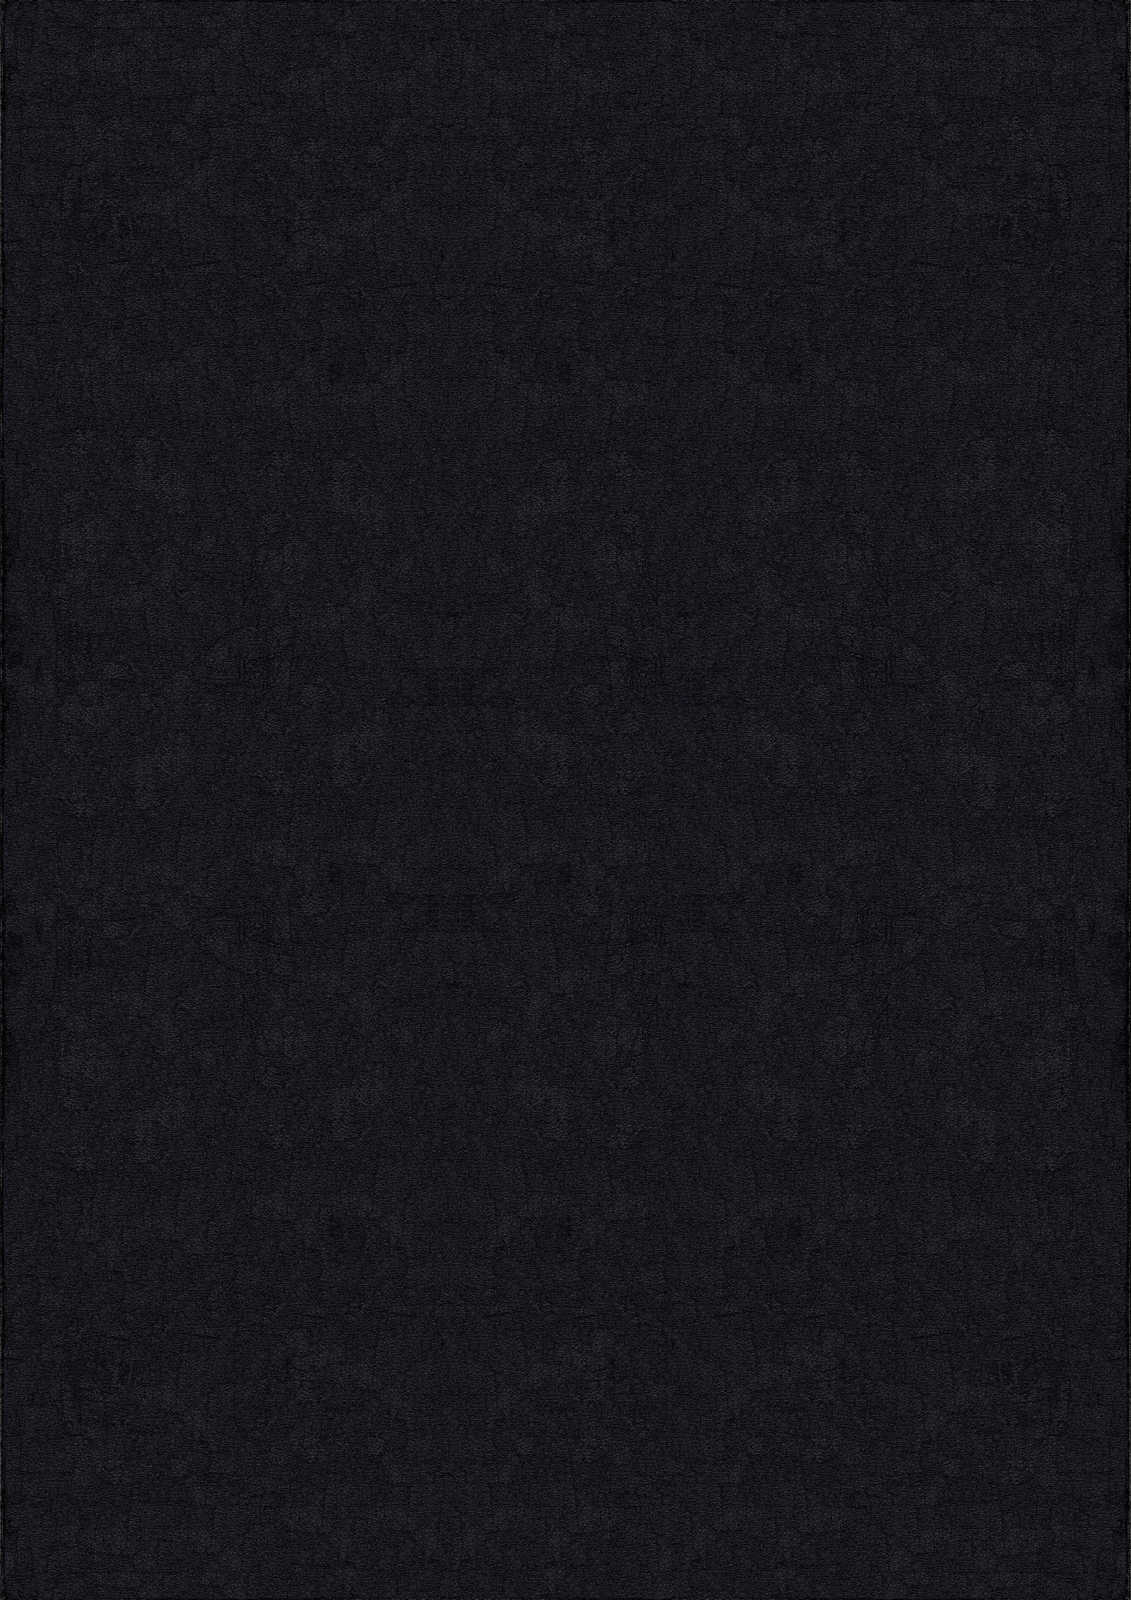             Fluweelzacht hoogpolig tapijt in zwart - 340 x 240 cm
        